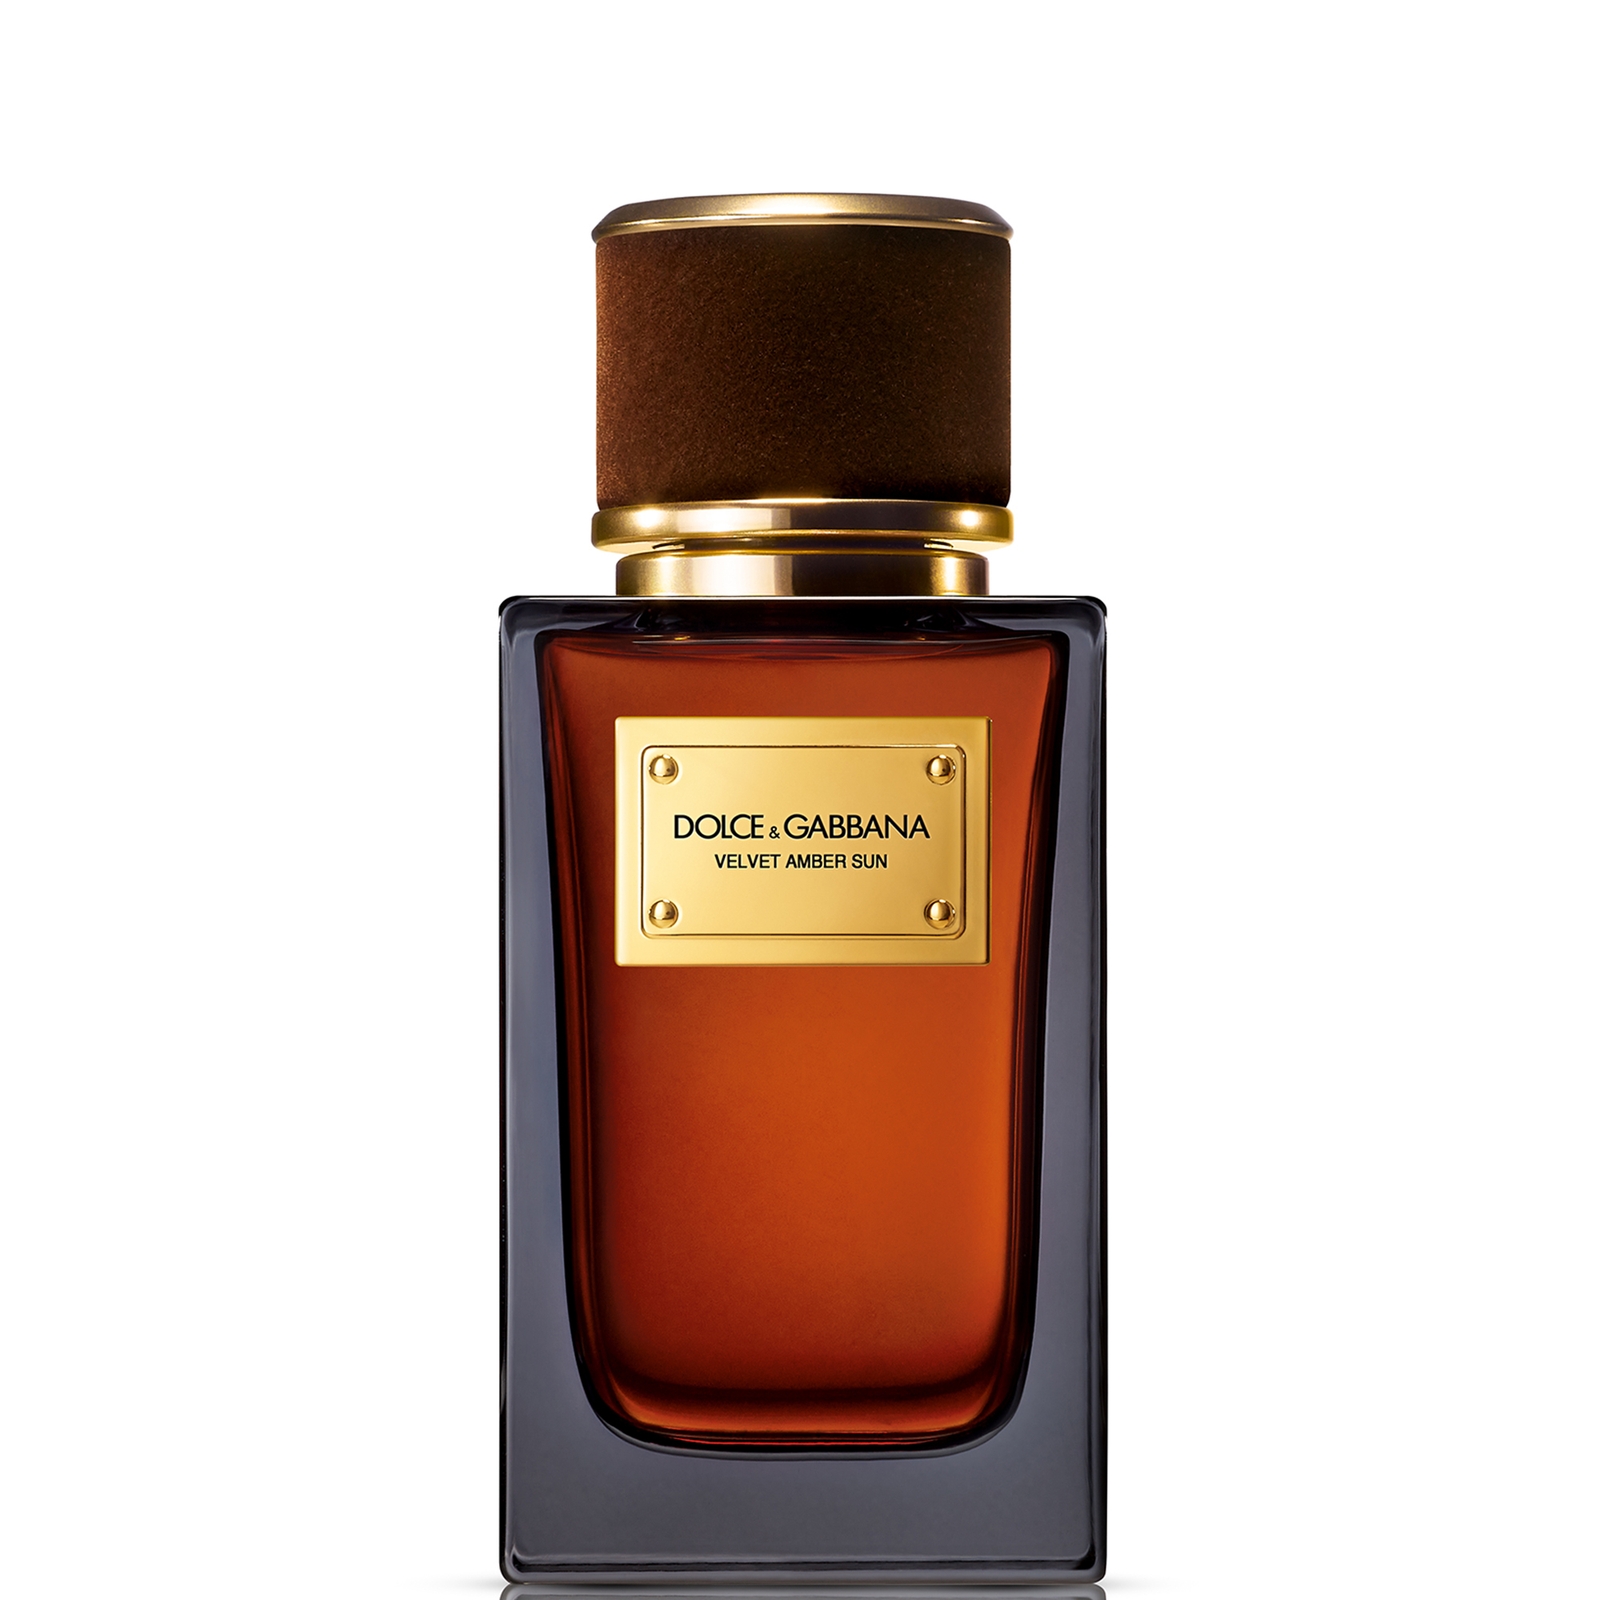 Dolce&Gabbana Velvet Amber Sun Eau de Parfum 100ml